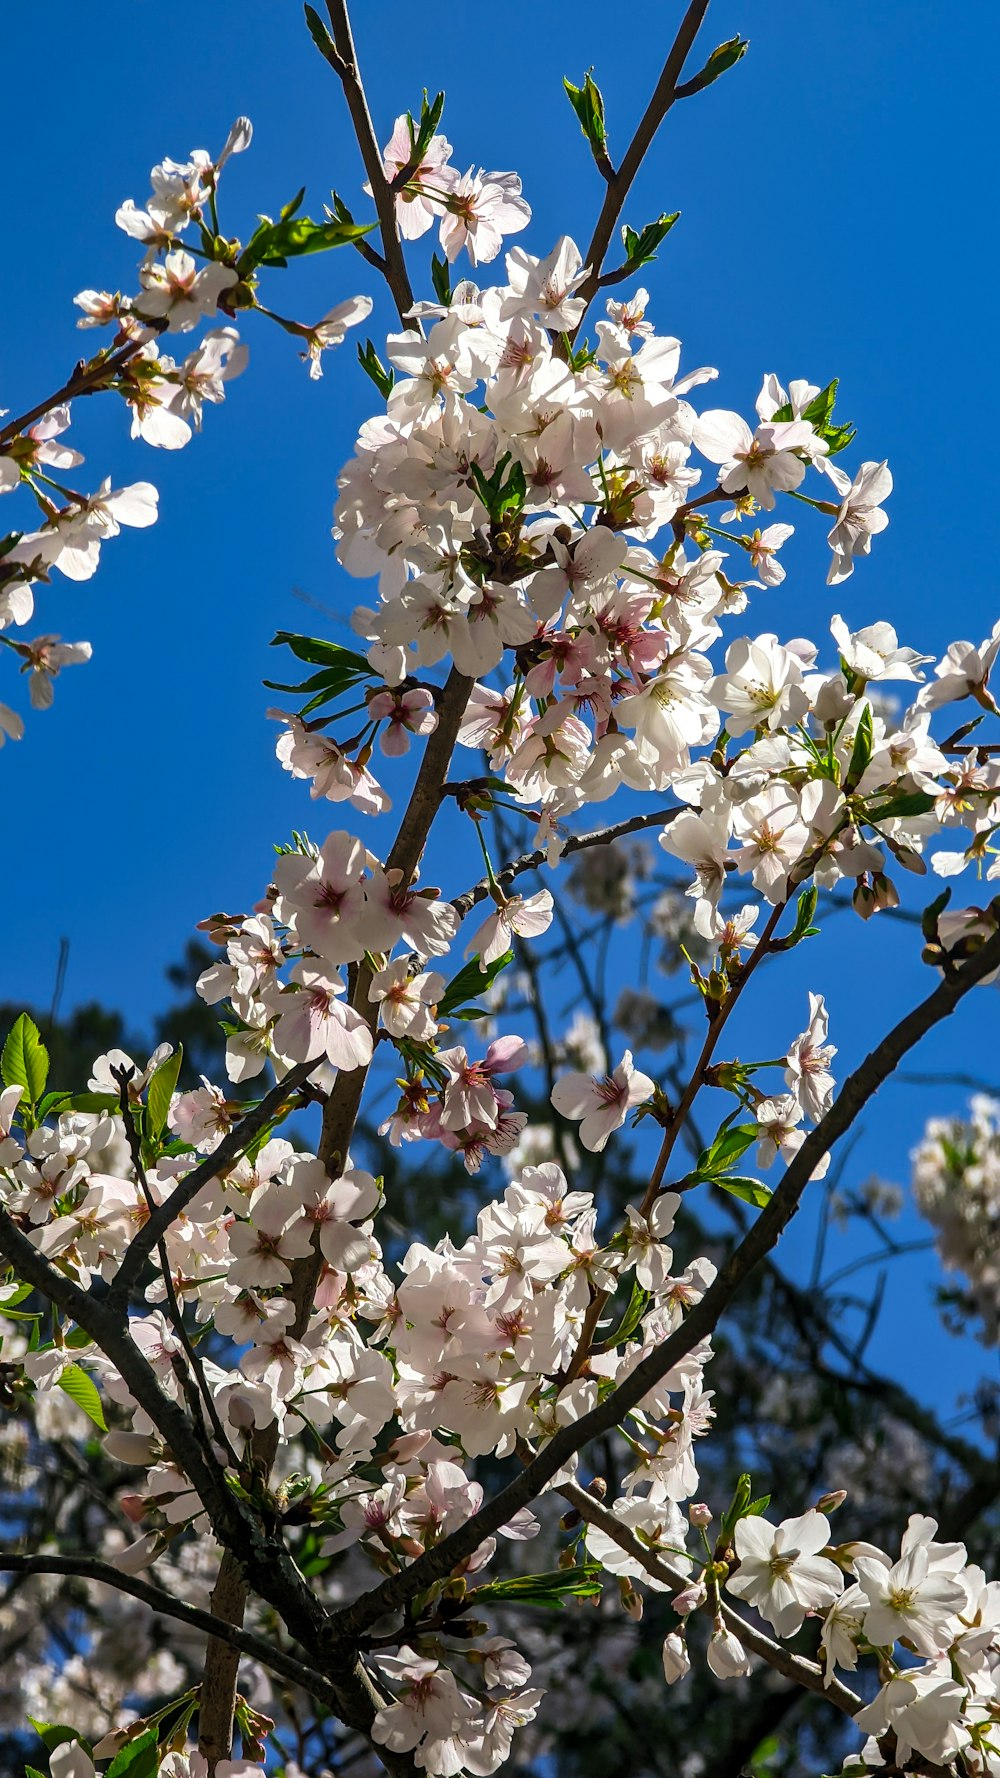 Un albero con molti fiori bianchi davanti a un cielo blu